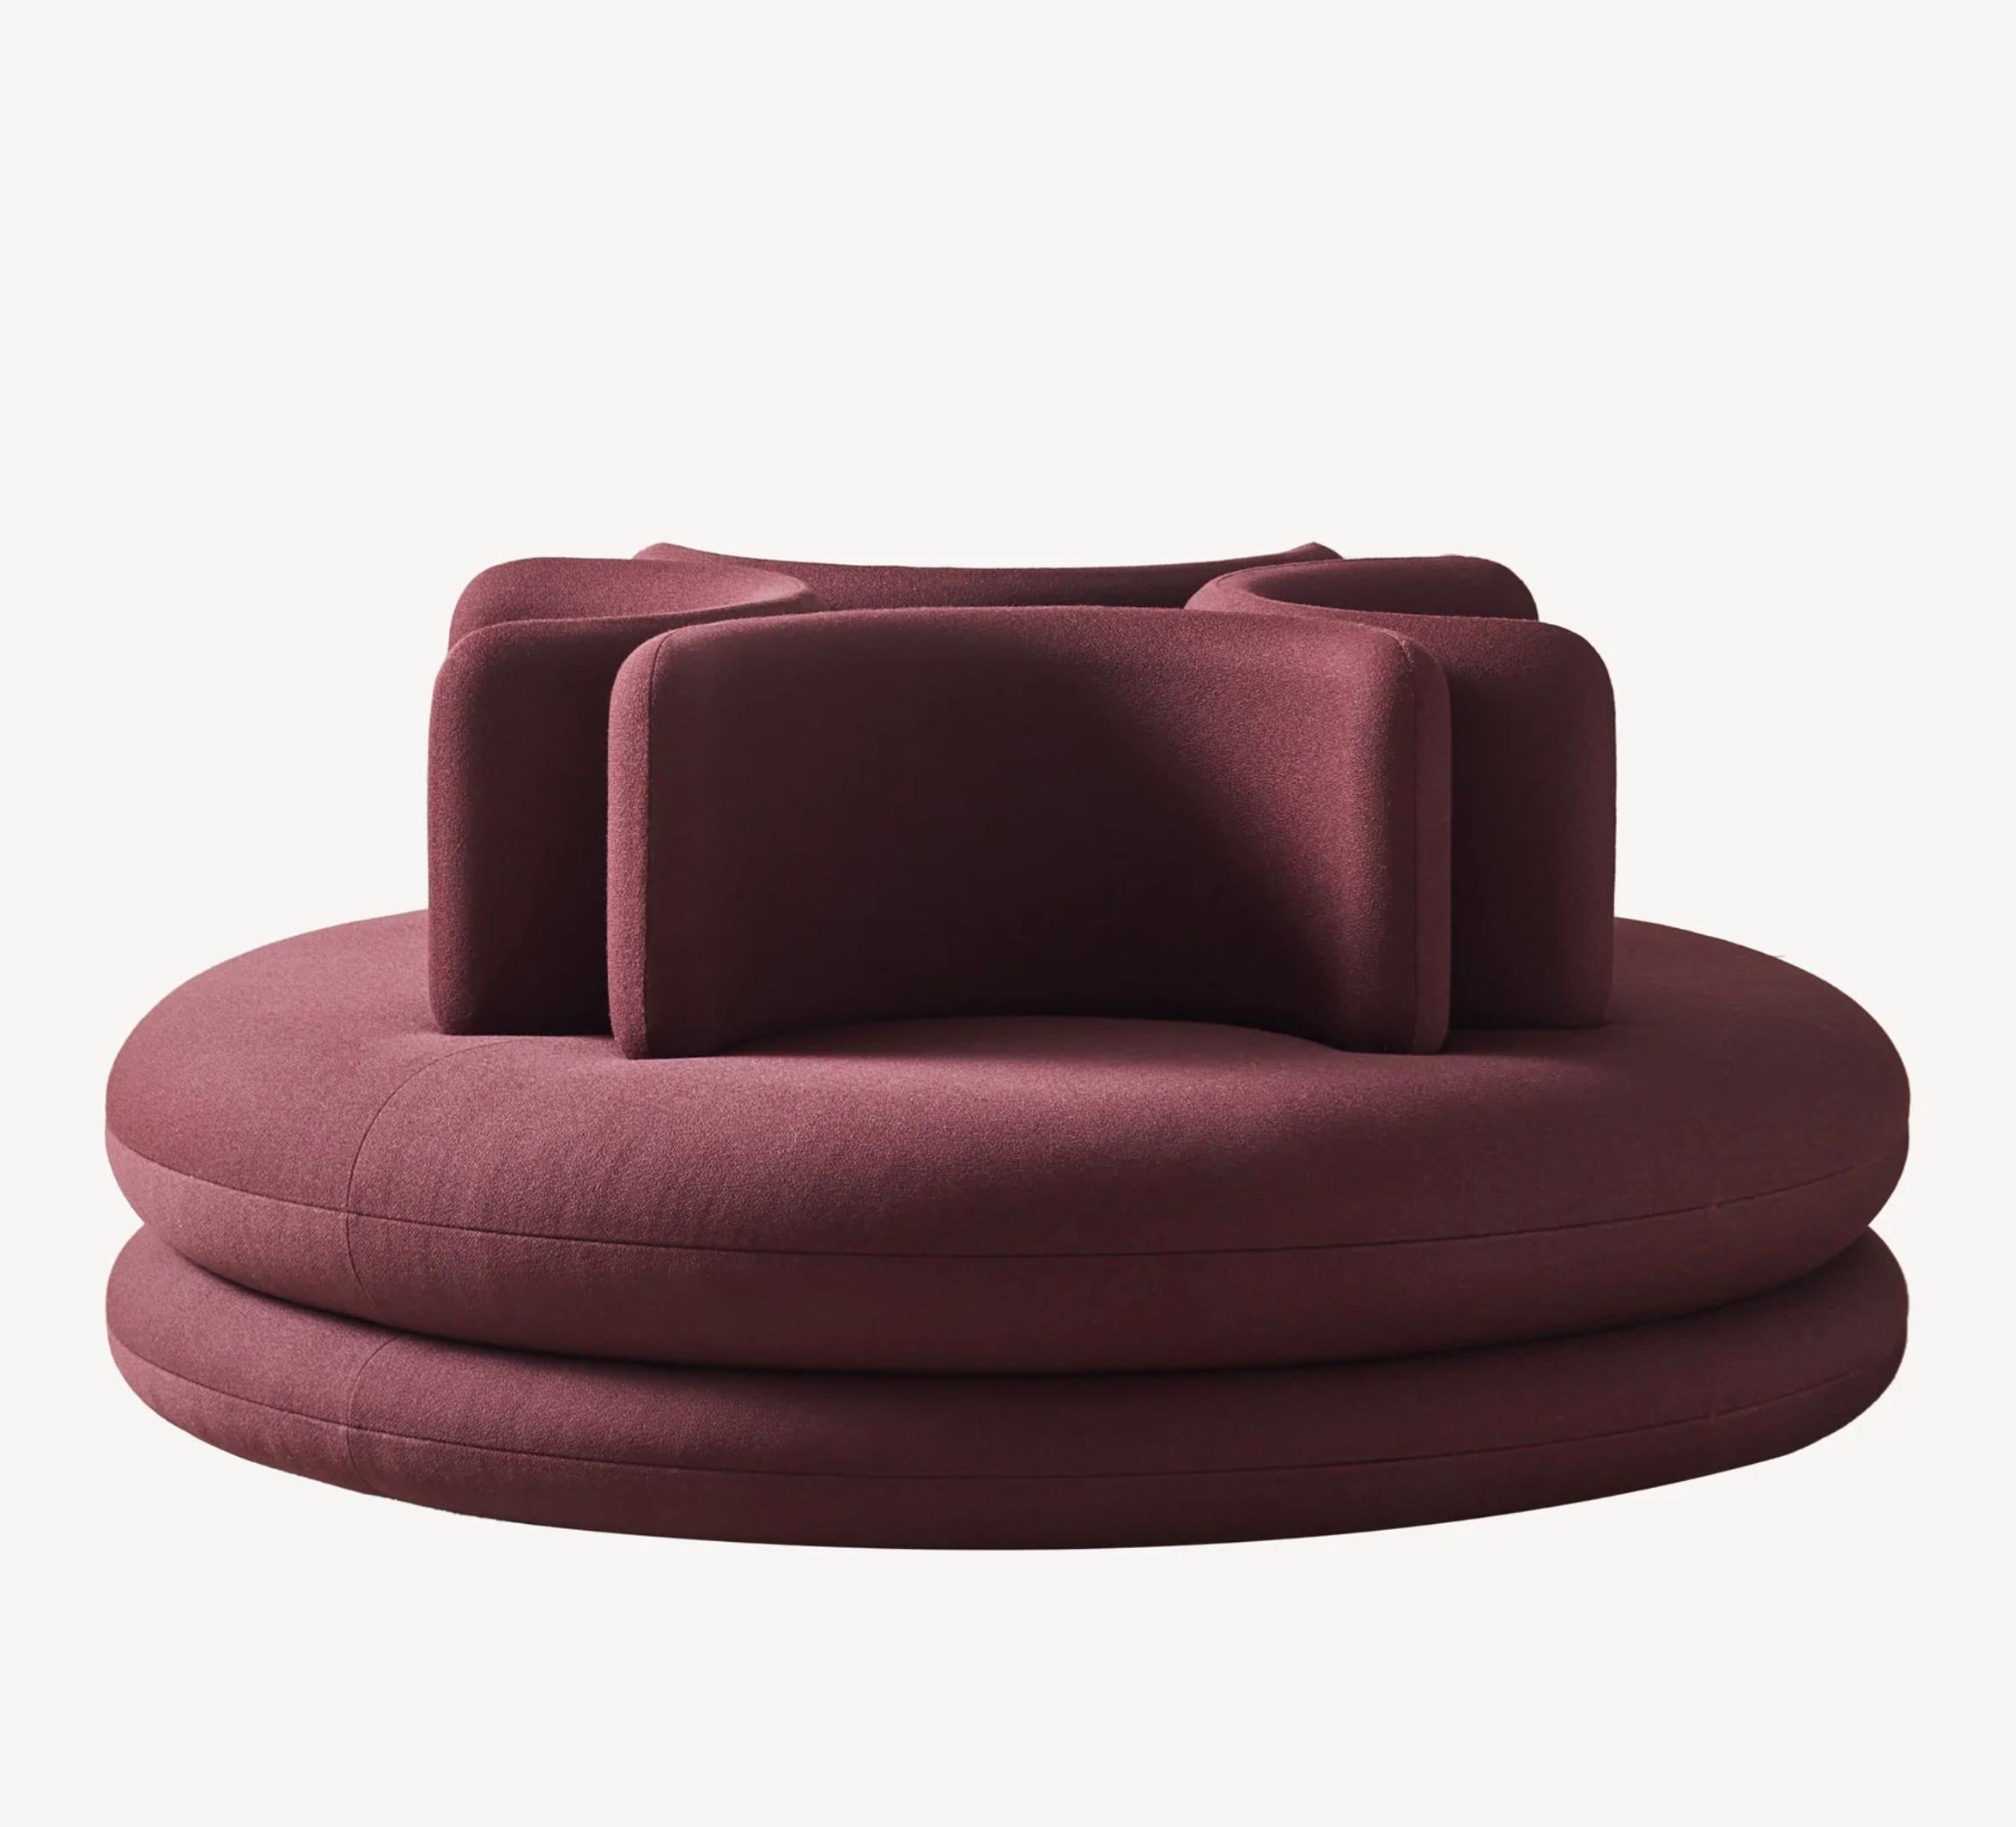 Verner Panton 'Easy' Sofa für Verpan. Entworfen im Jahr 1963. Neue, aktuelle Produktion.

Mit ihren runden Formen und ihrem mehrschichtigen Design gehört die Easy-Kollektion zu den visuell markantesten Stücken des Verner Panton